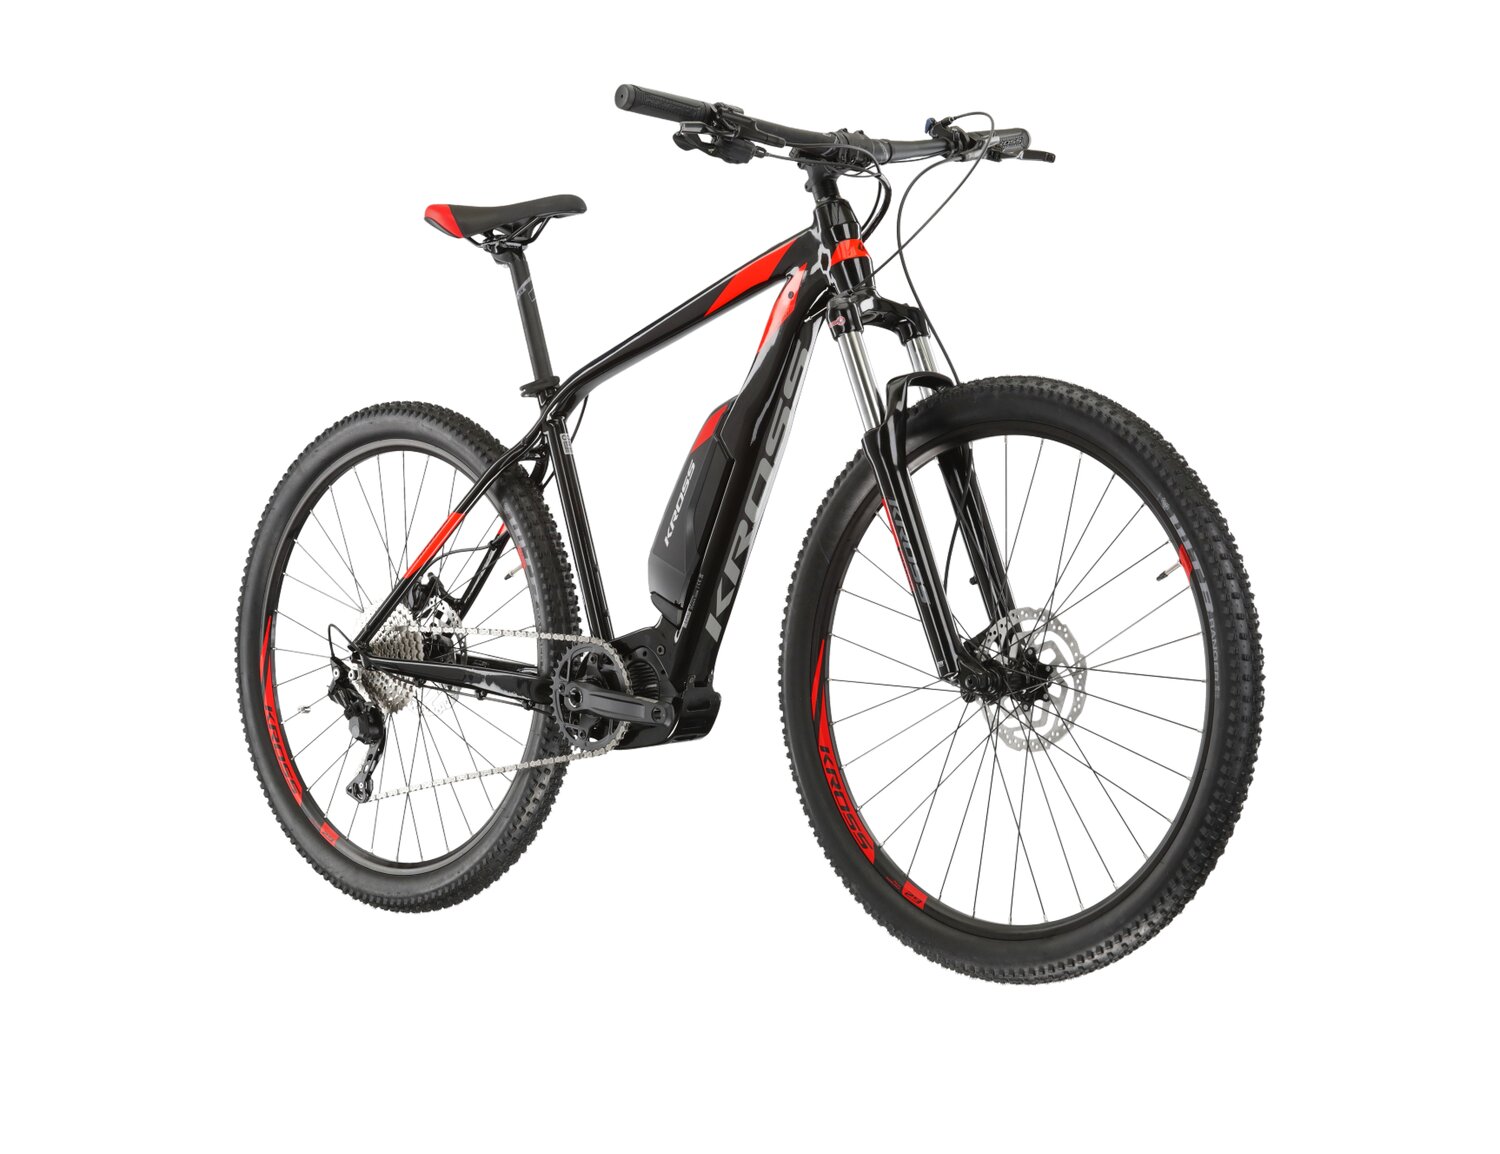  Elektryczny rower górski Ebike MTB XC KROSS Level Boost 1.0 504 Wh na aluminiowej ramie w kolorze czarnym wyposażony w osprzęt Shimano i napęd elektryczny Shimano 